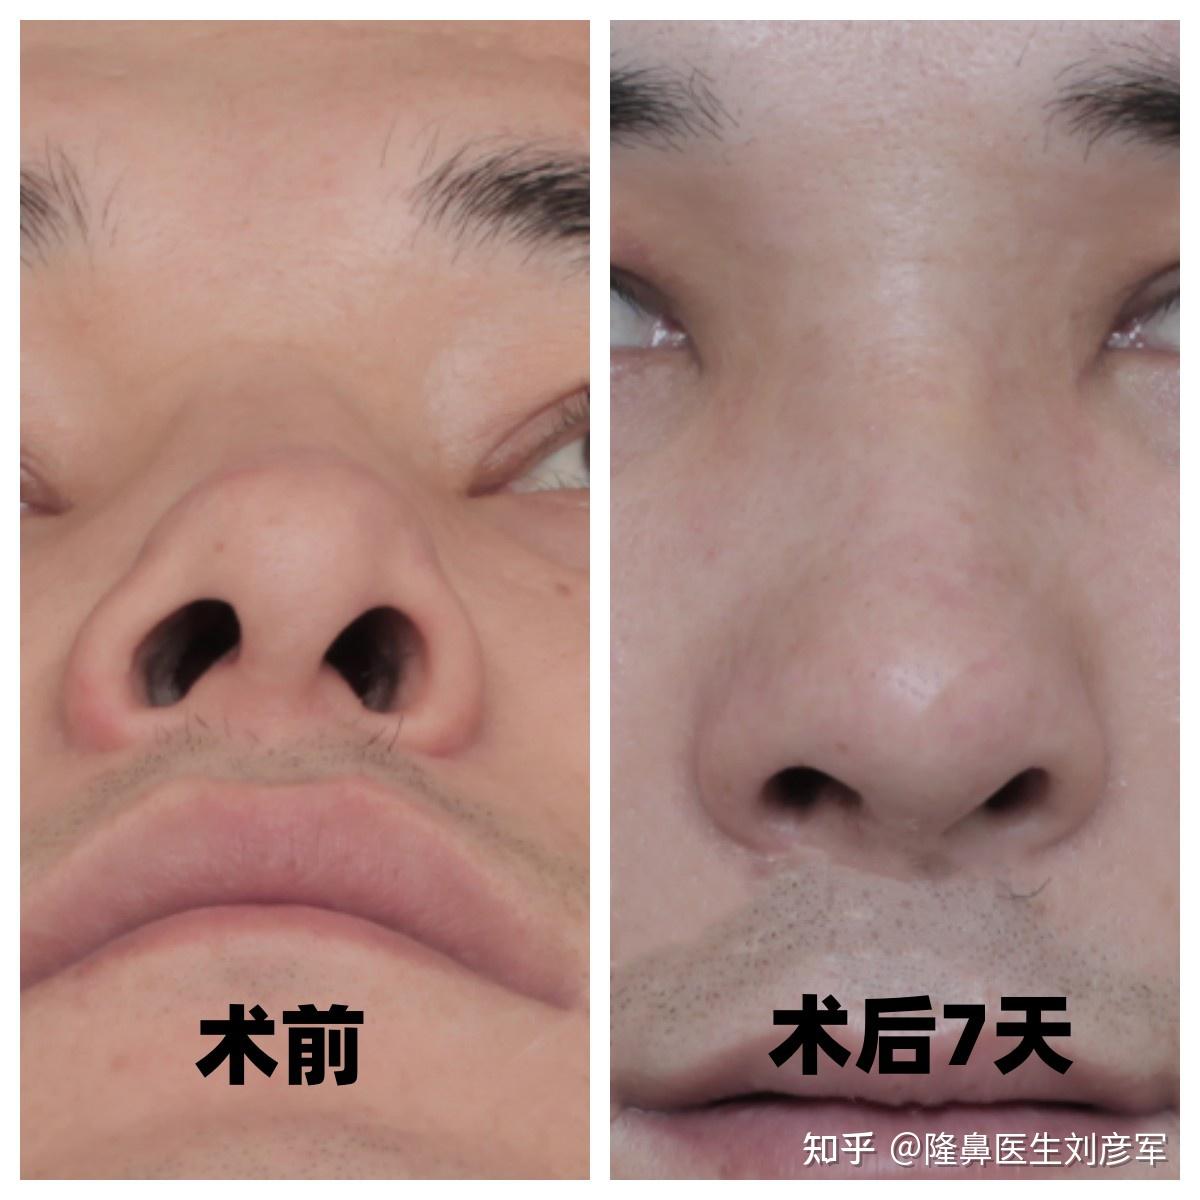 图1-76 外鼻和鼻中隔-基础医学-医学